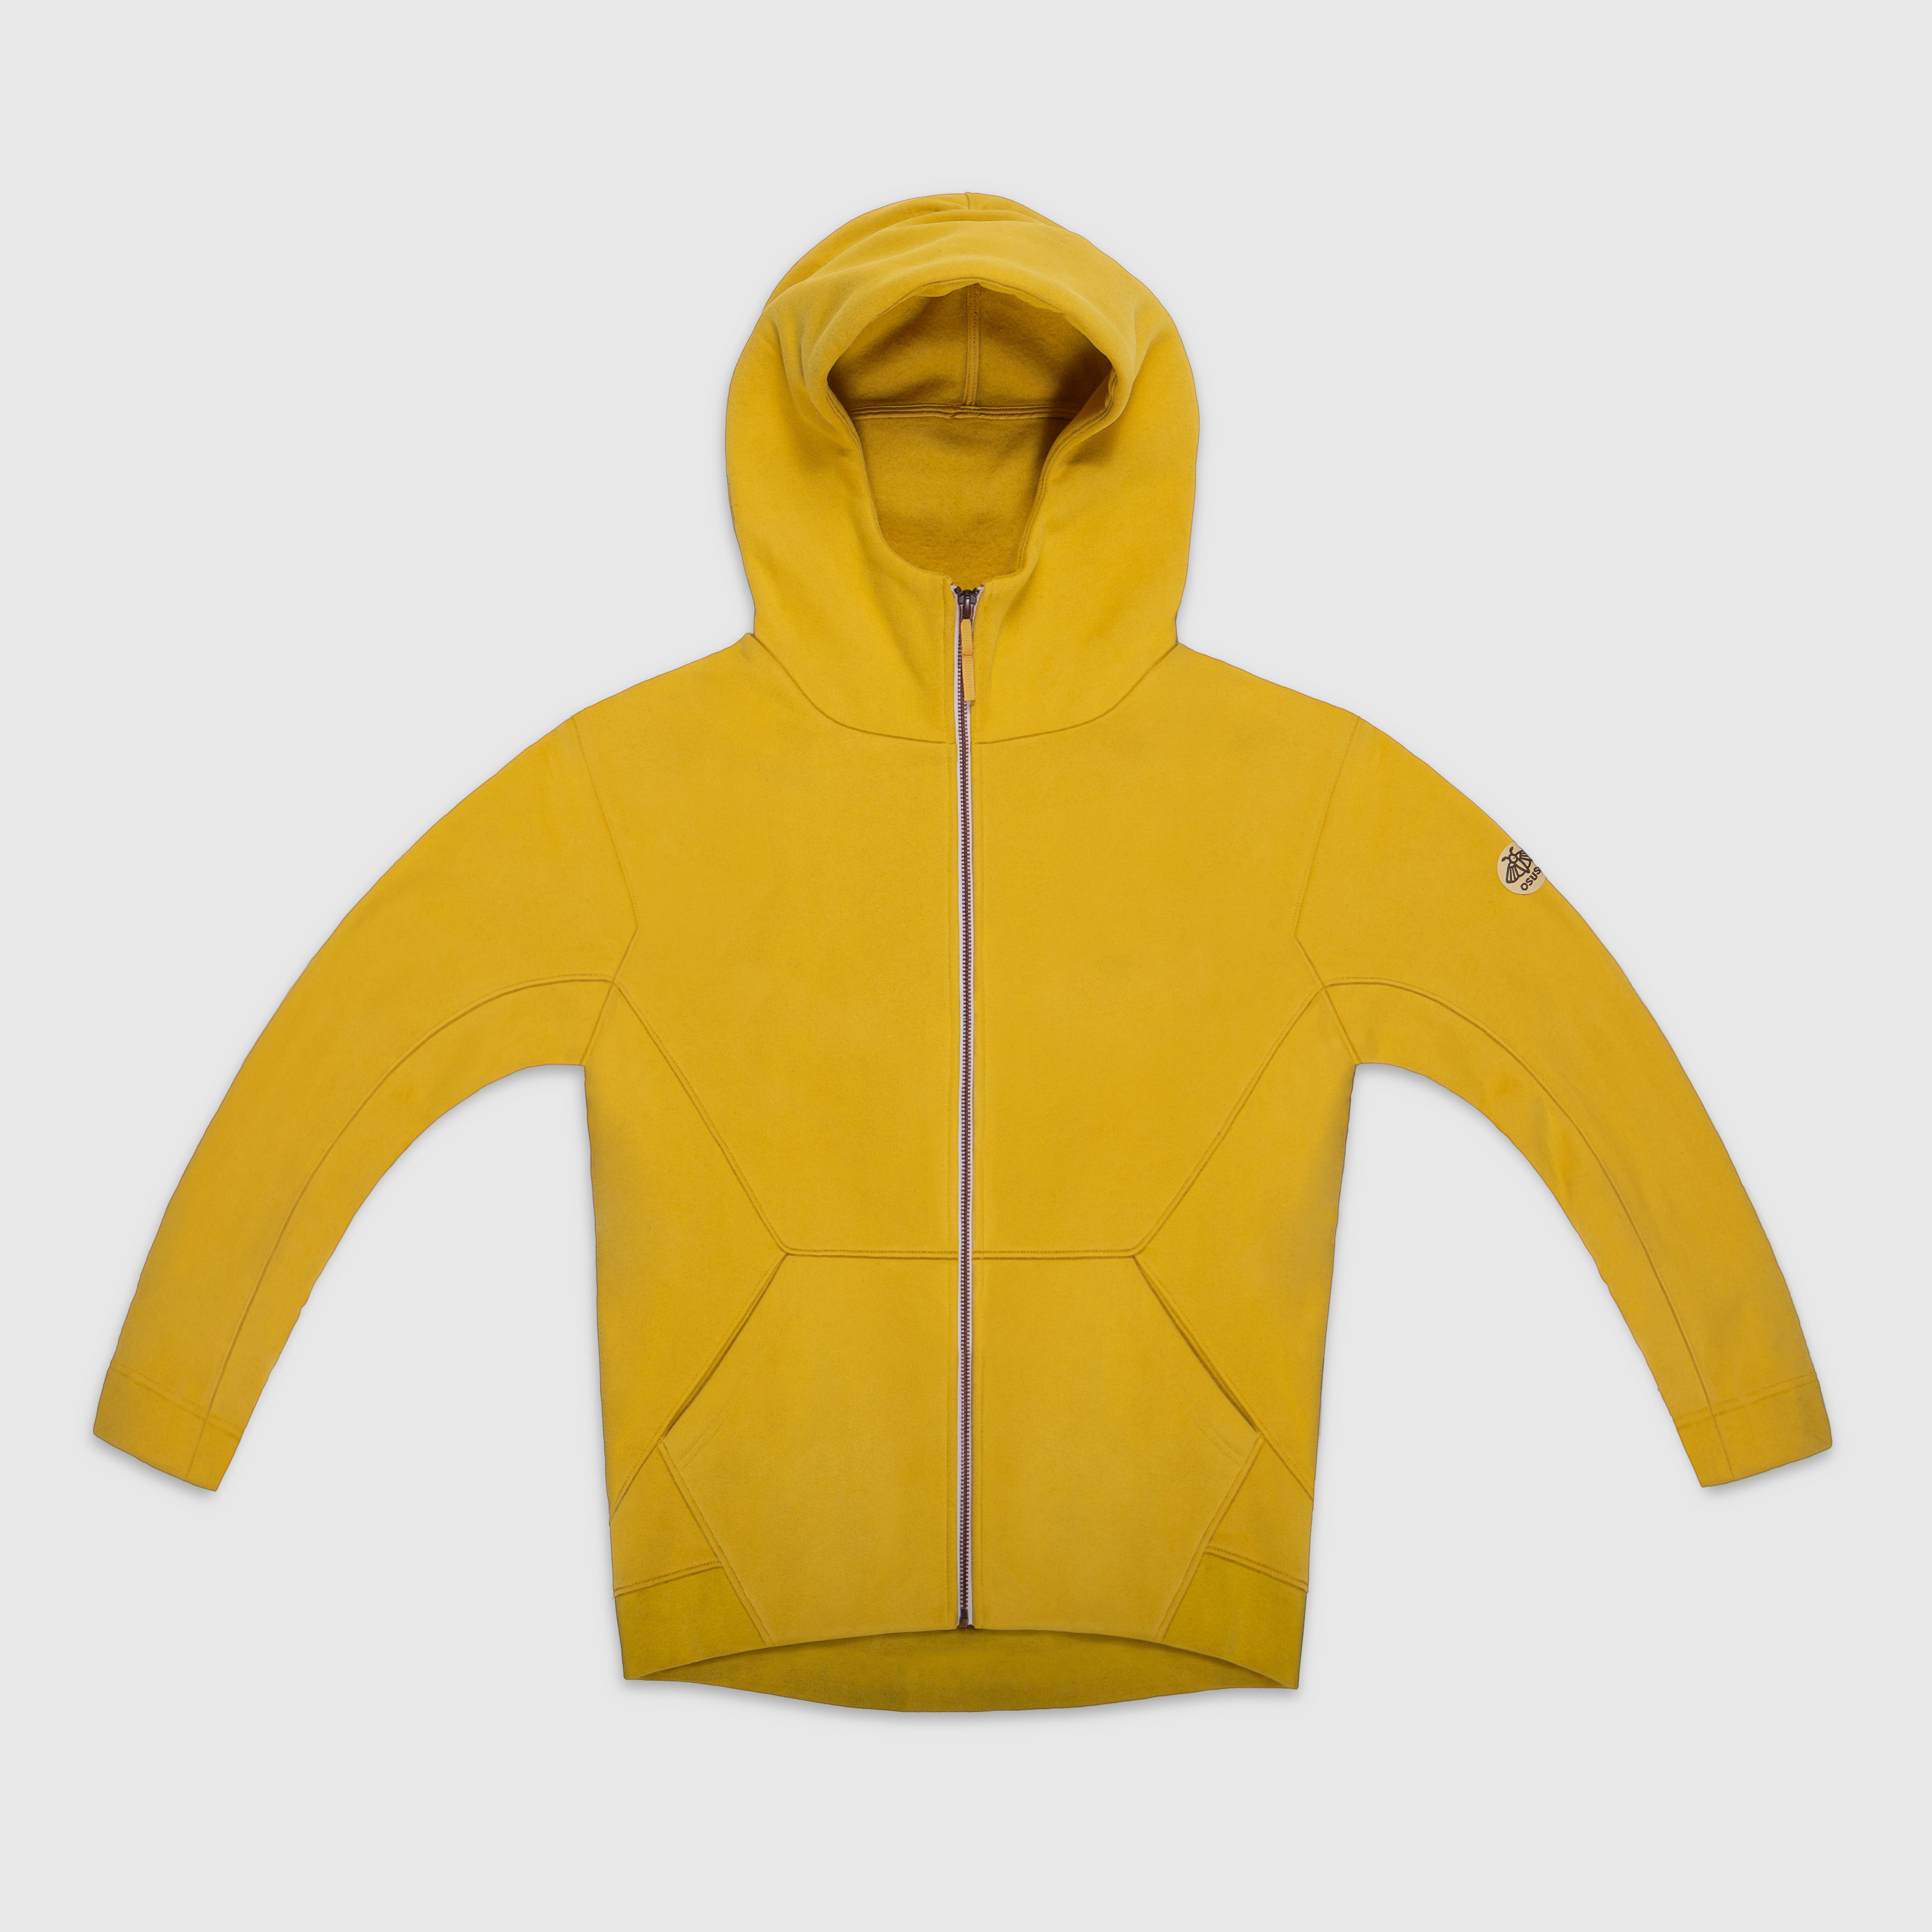 Amara – Fleece Full-Zip Hoodie in Mustard